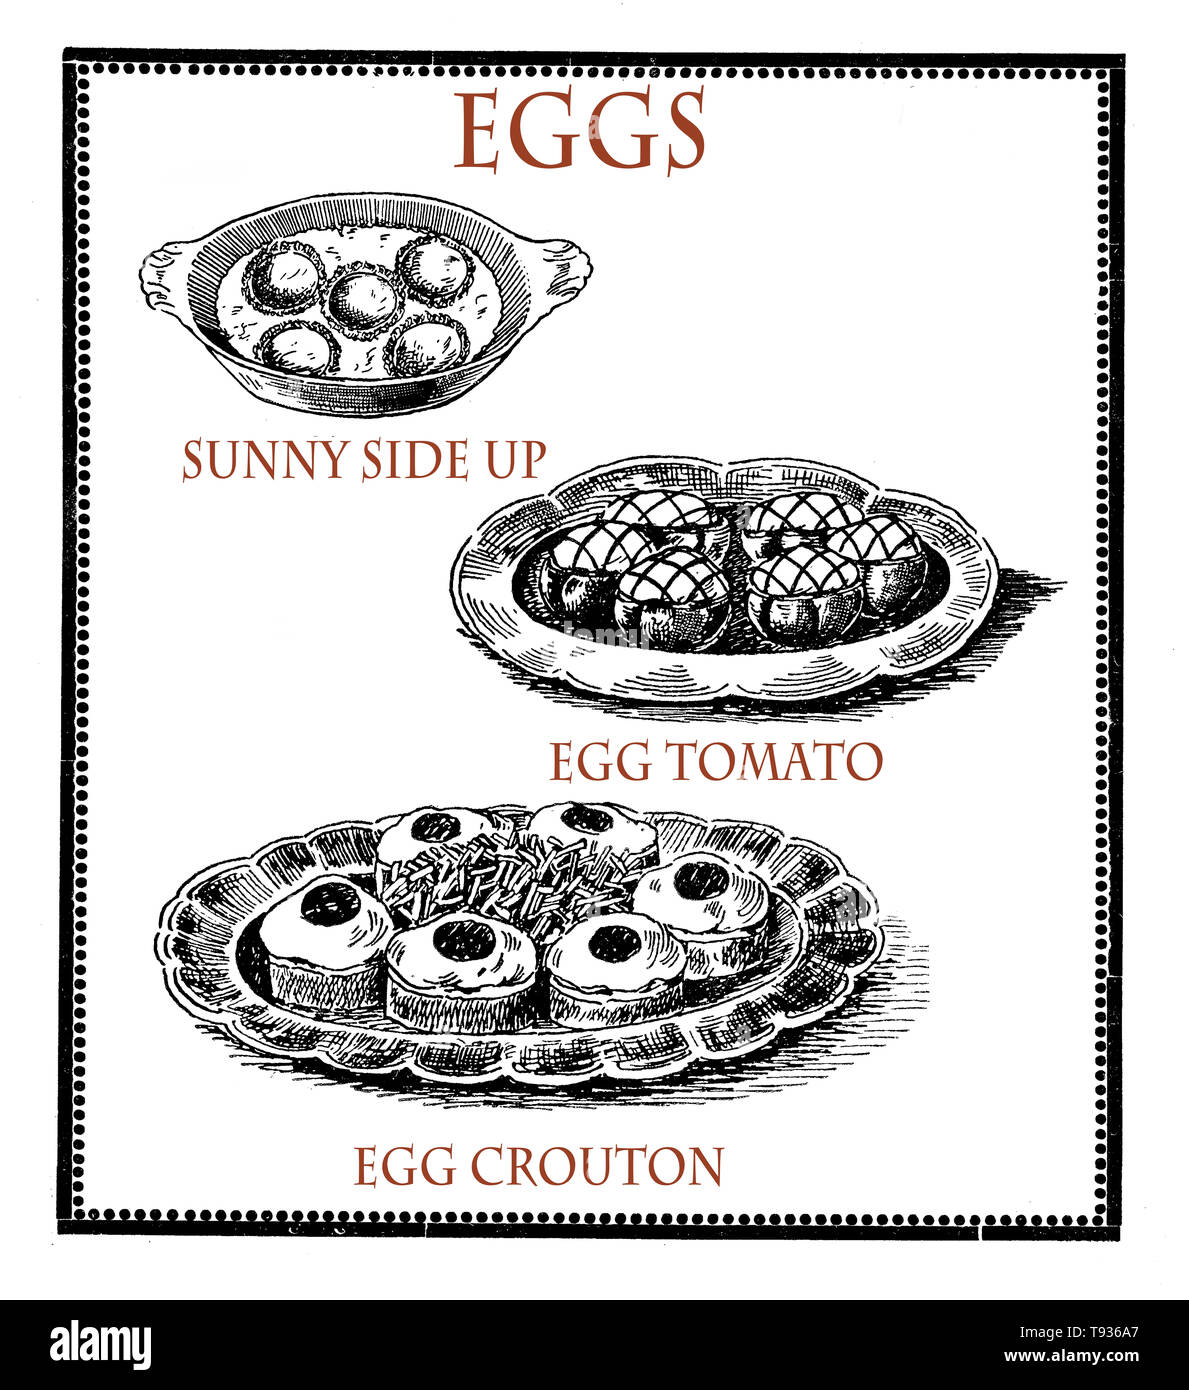 La cucina del passato: bianco e nero collage vintage di incisioni che descrivono la preparazione di uova, Sunny Side, crouton uovo e pomodori ripieni con uova Foto Stock